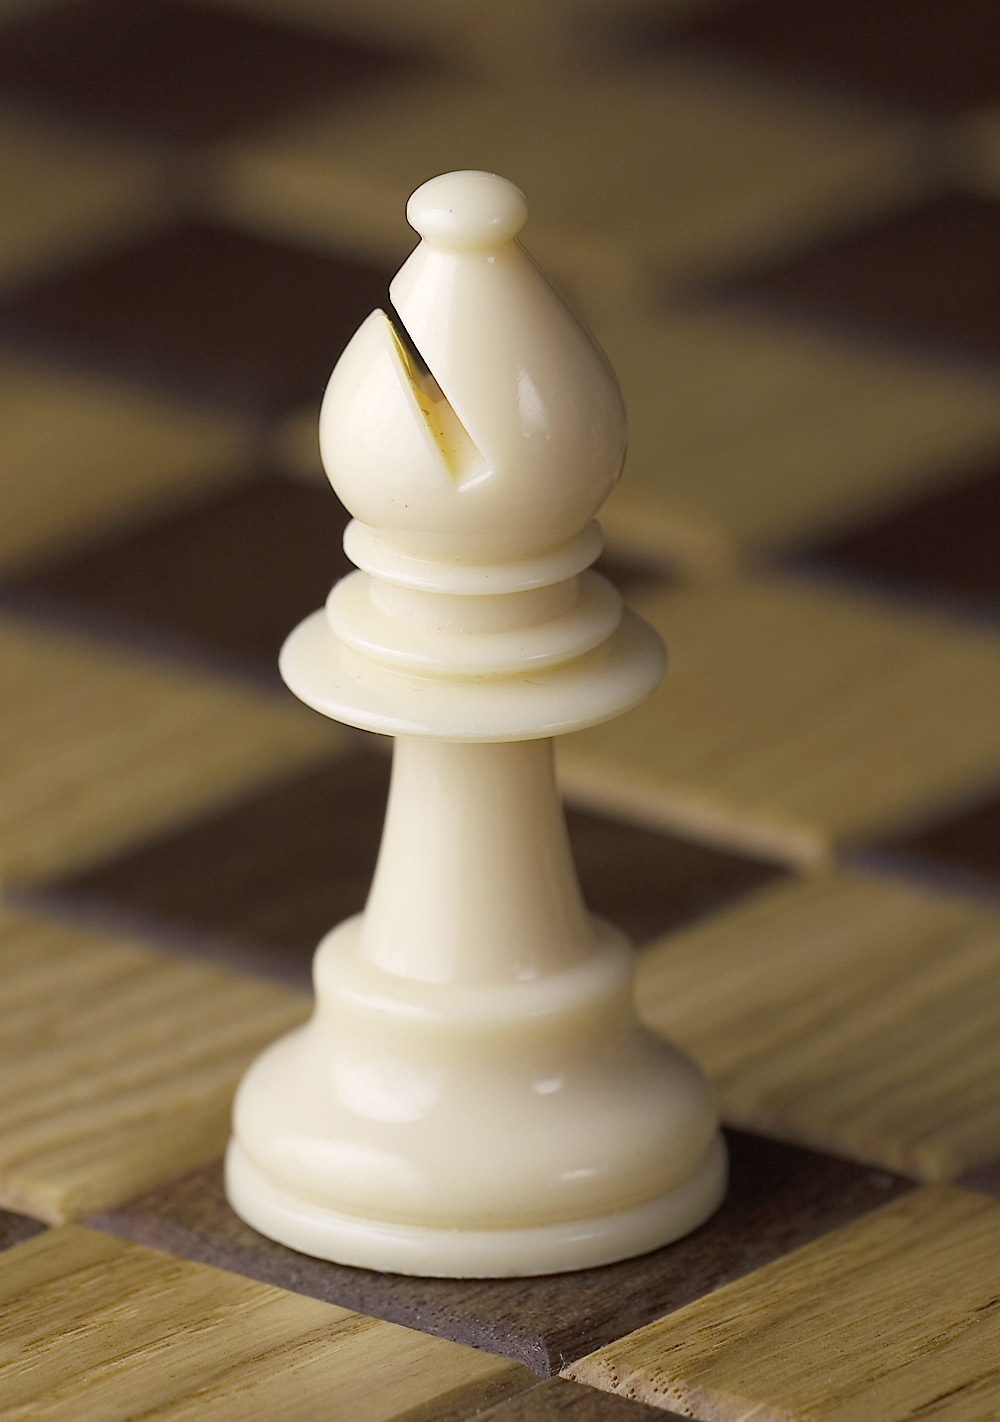 imagem da peça bispo, do jogo de xadrez, do site http://es.wikipedia.org/wiki/Alfil